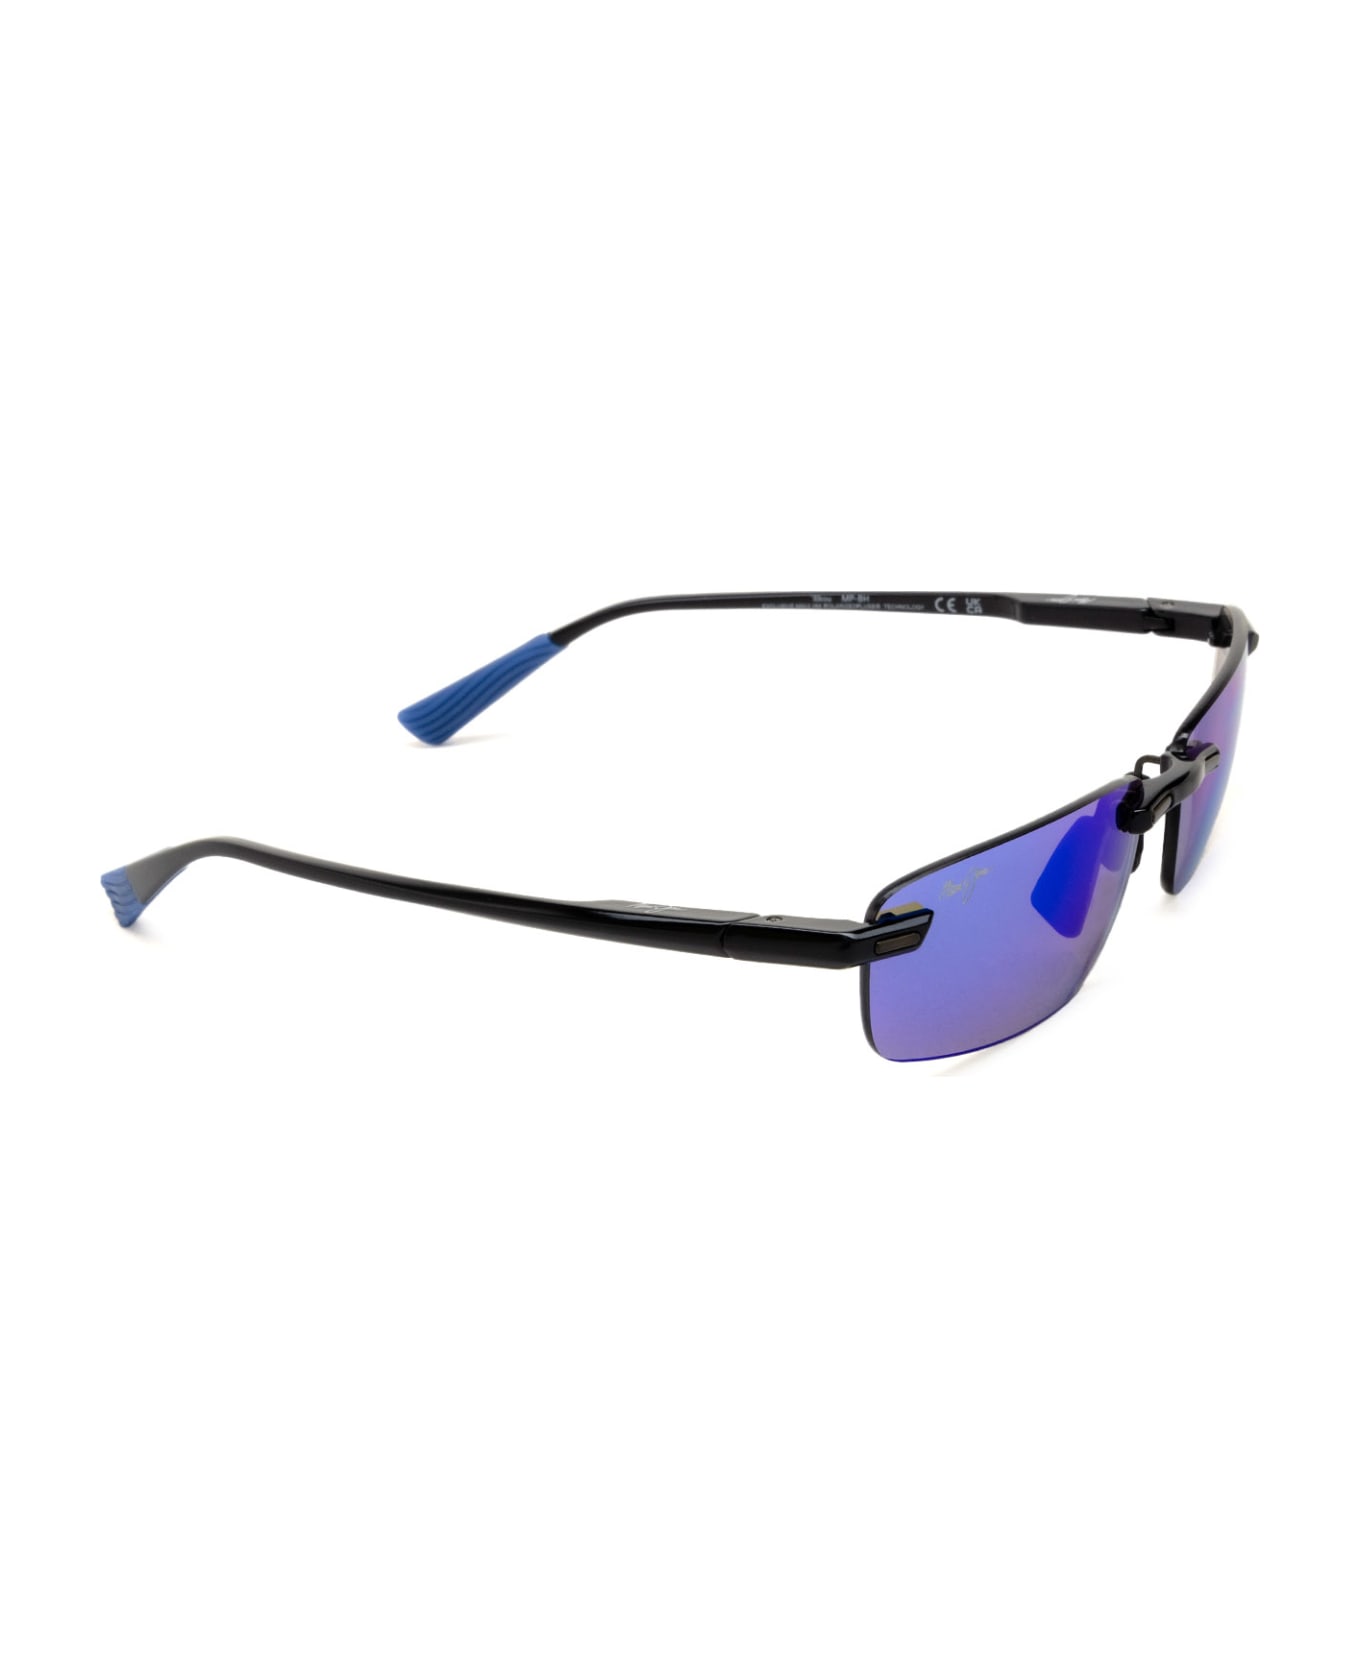 Maui Jim Mj630 Shiny Black W/ Blue Sunglasses - Shiny Black W/ Blue